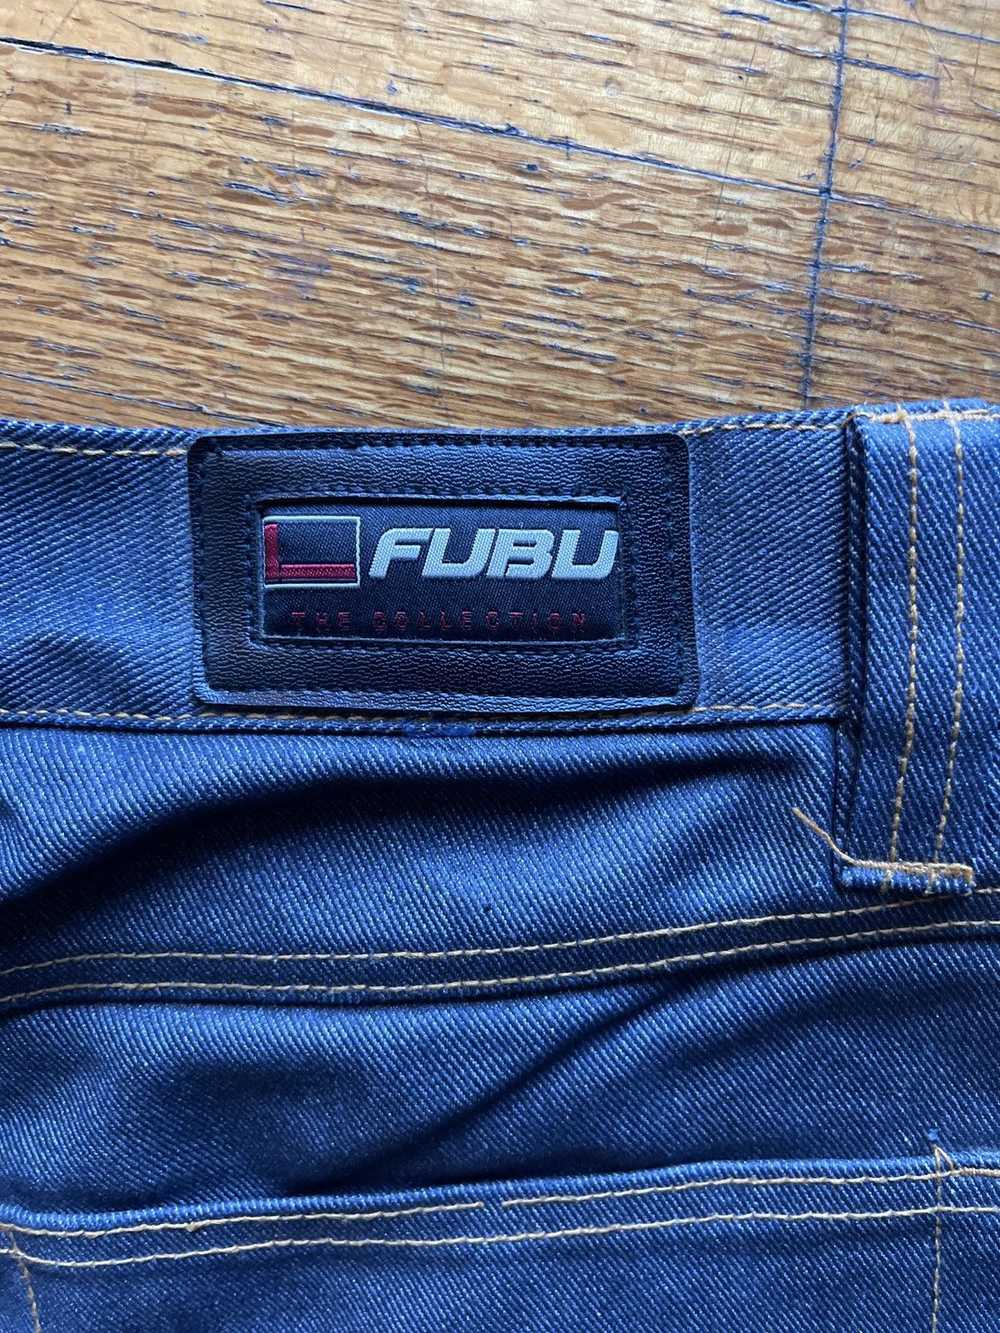 Fubu Vintage FUBU Cargo Shorts - image 2